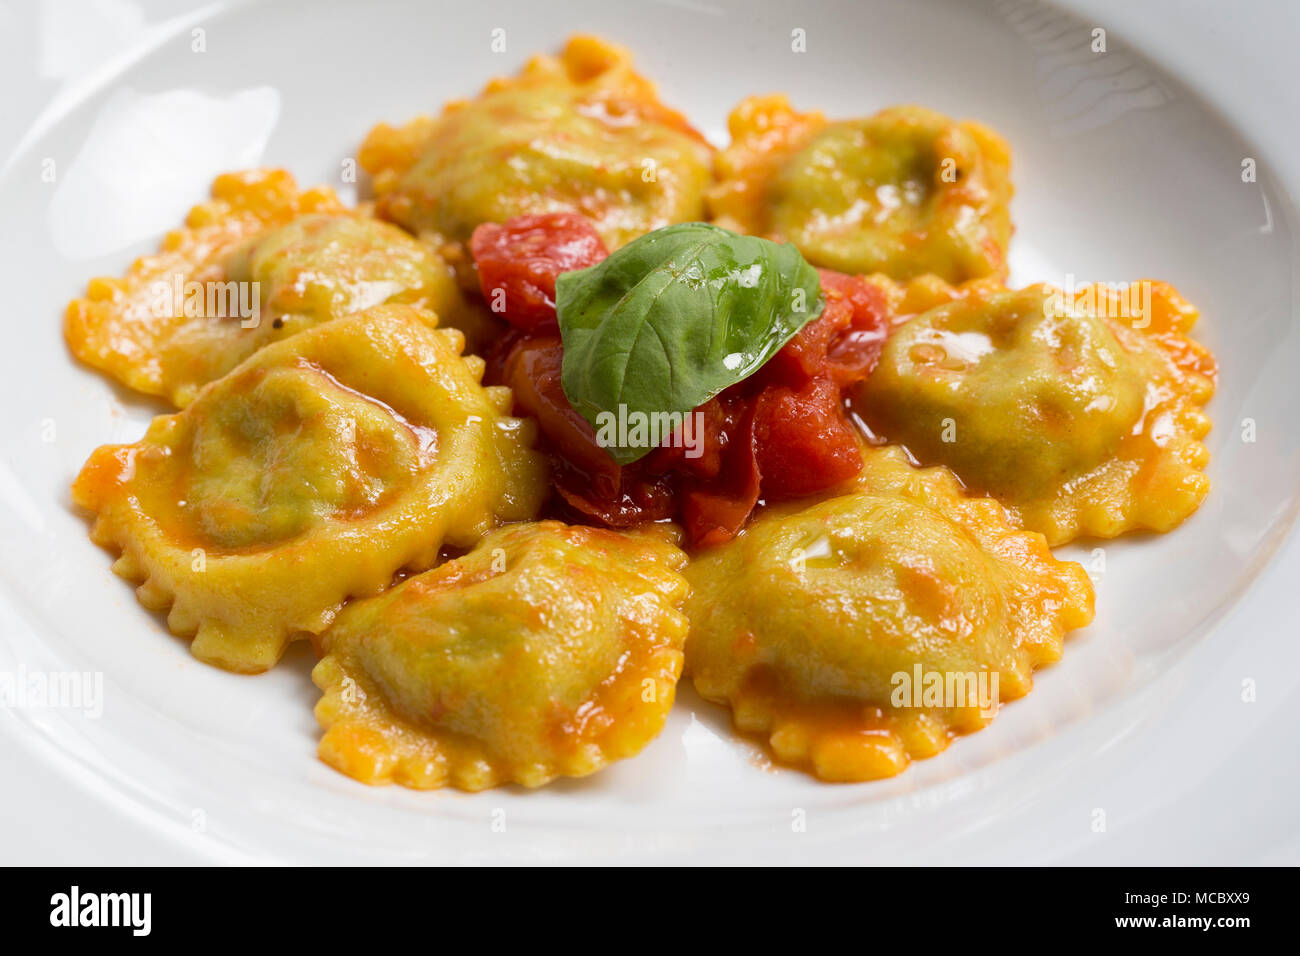 Scatto frontale di un tipico piatto italiano, un piatto di ravioli con il ripieno di verdure e salsa di pomodoro e basilico sulla parte superiore Foto Stock